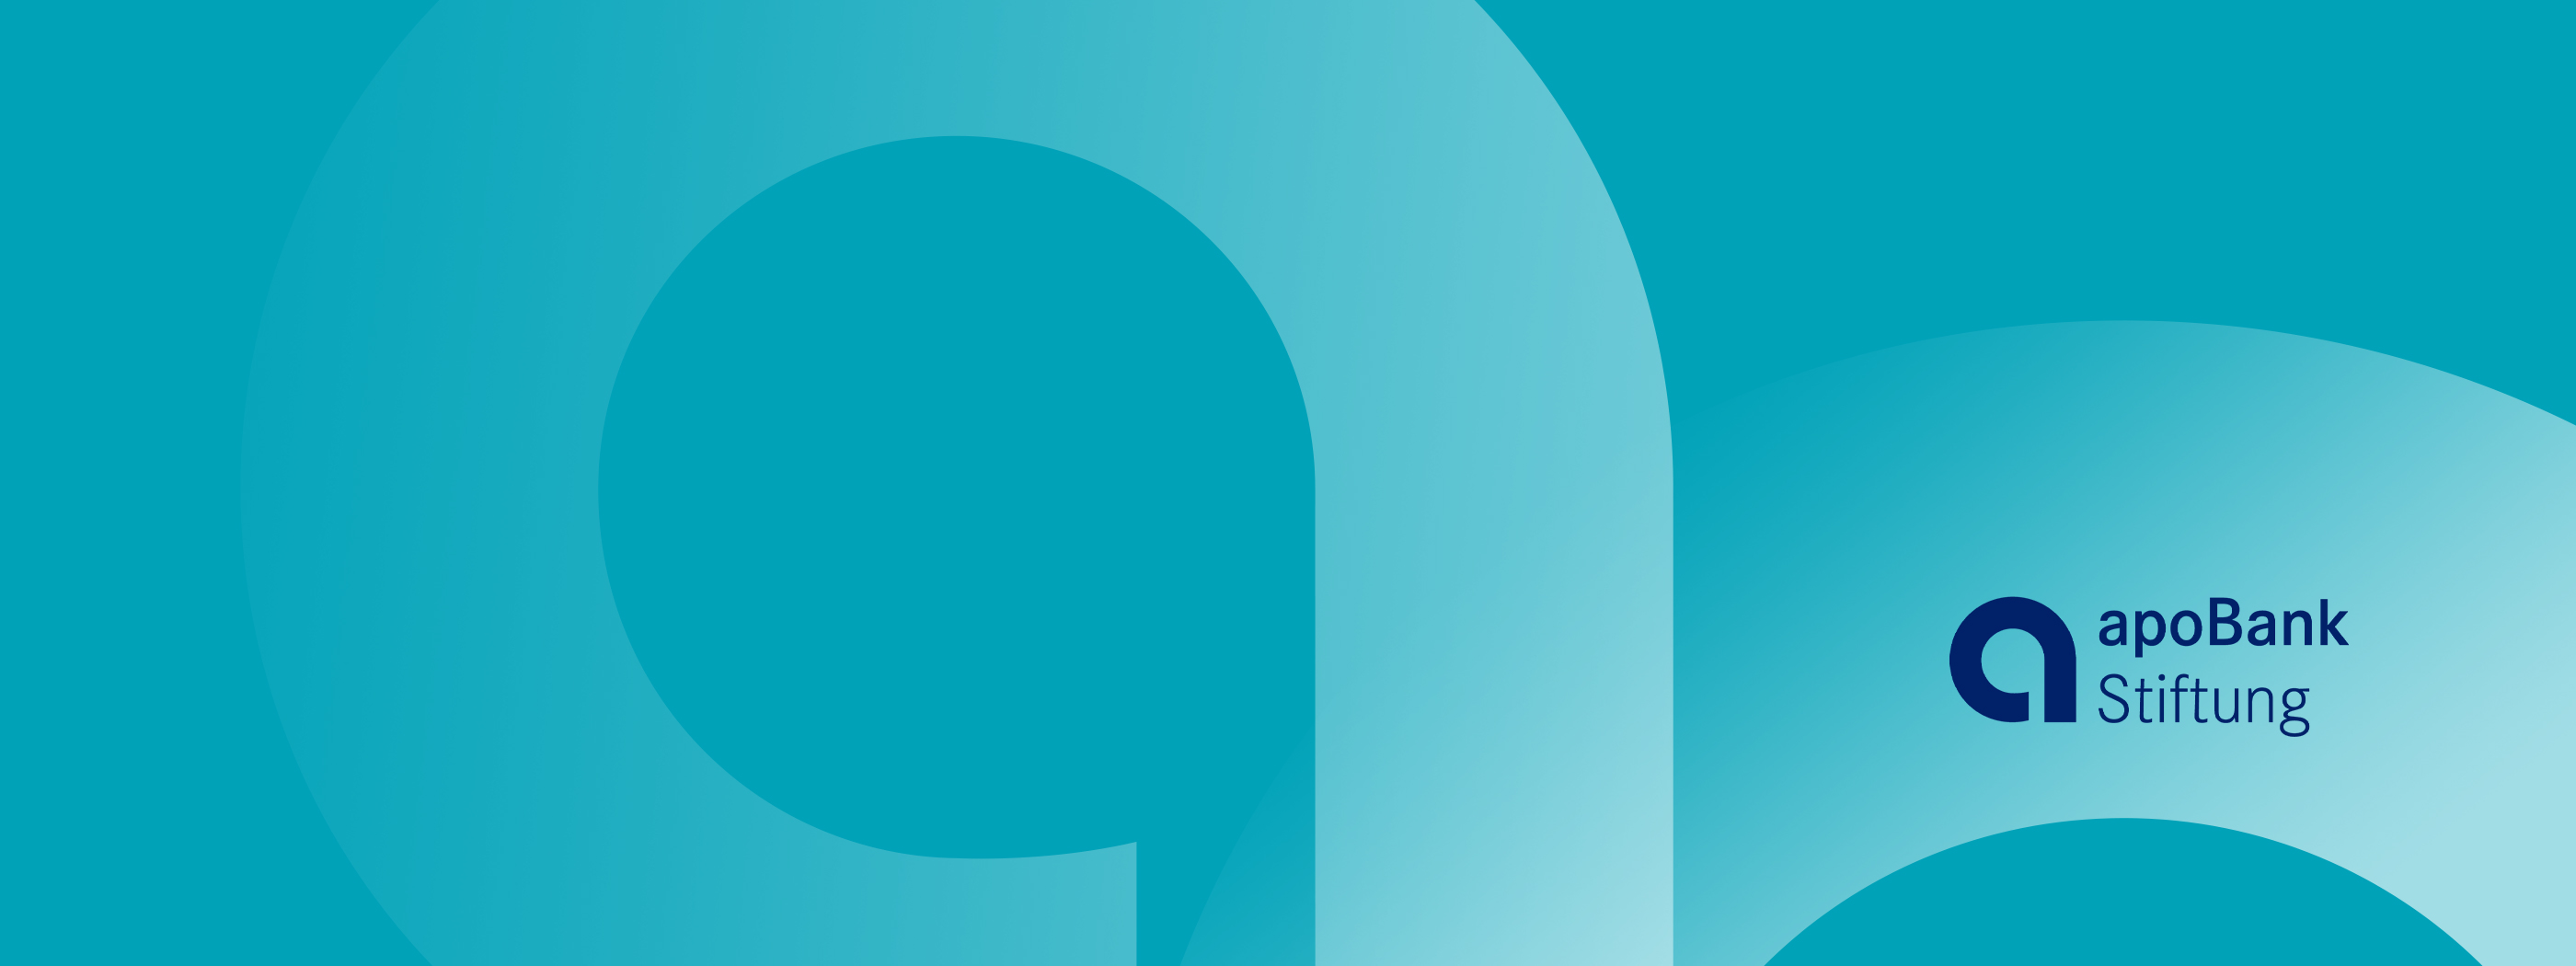 Logo der apoBank-Stiftung mit hellblauem Hintergrund